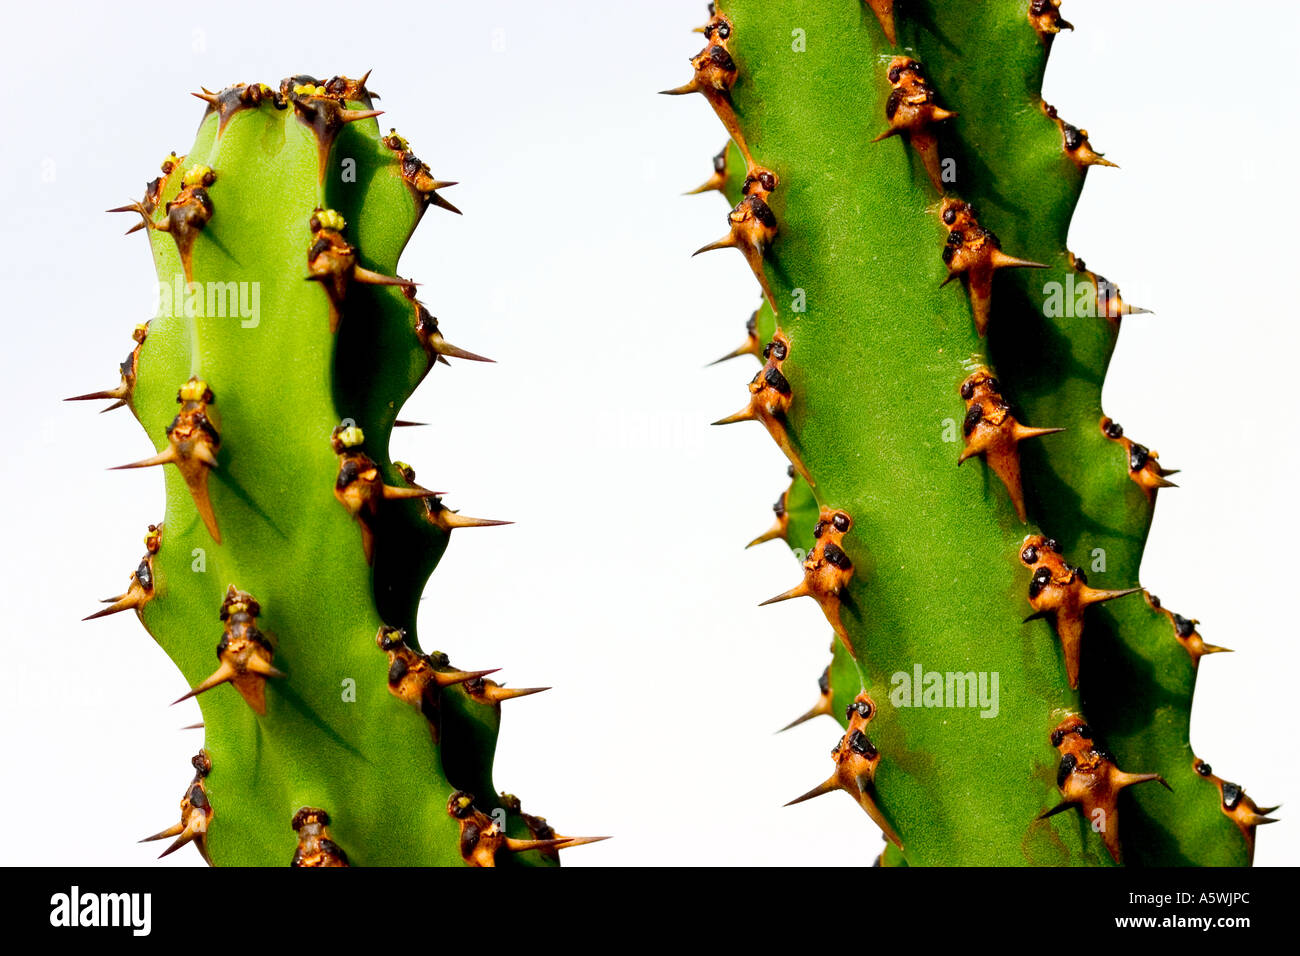 Cactus shot against white background Stock Photo